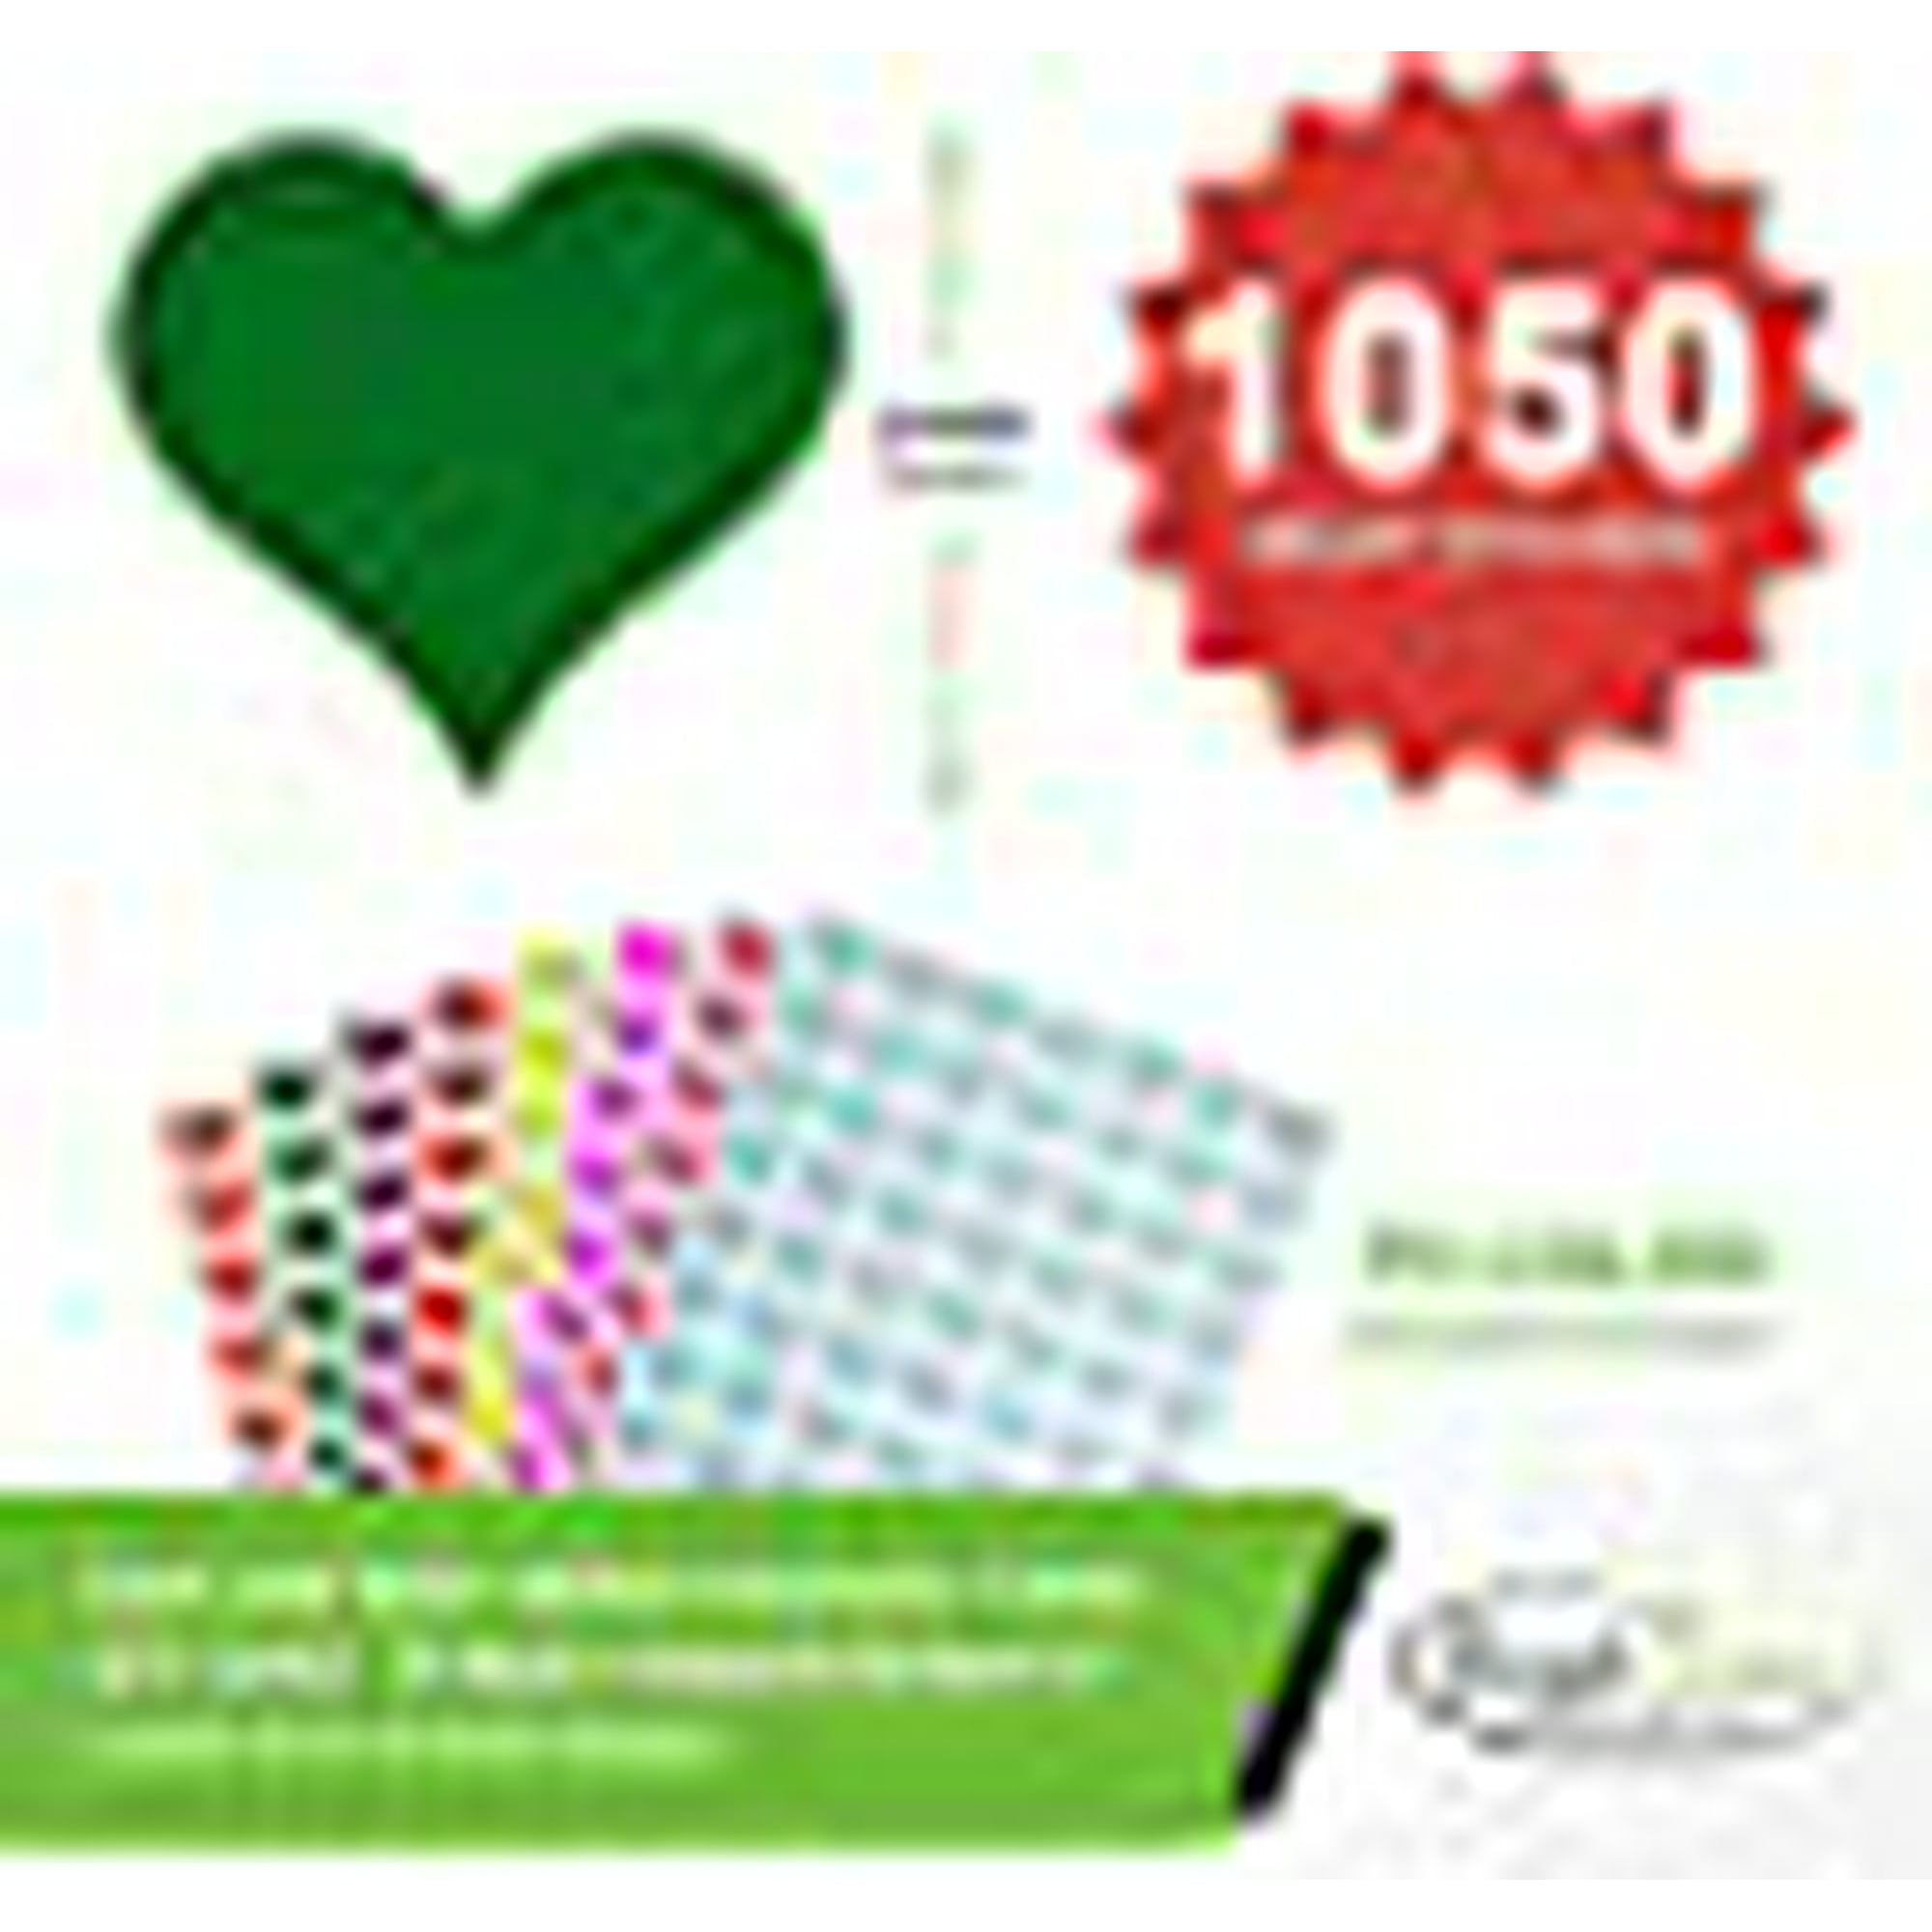 Coeur étiquette adhésive 13mm (1/2) 0,5 pouces autocollants métalliques  Coeurs d'or pour des enveloppes, des joints d'invitation, emballages  cadeaux, boîtes et sacs - Pack 1050 par Royal Green